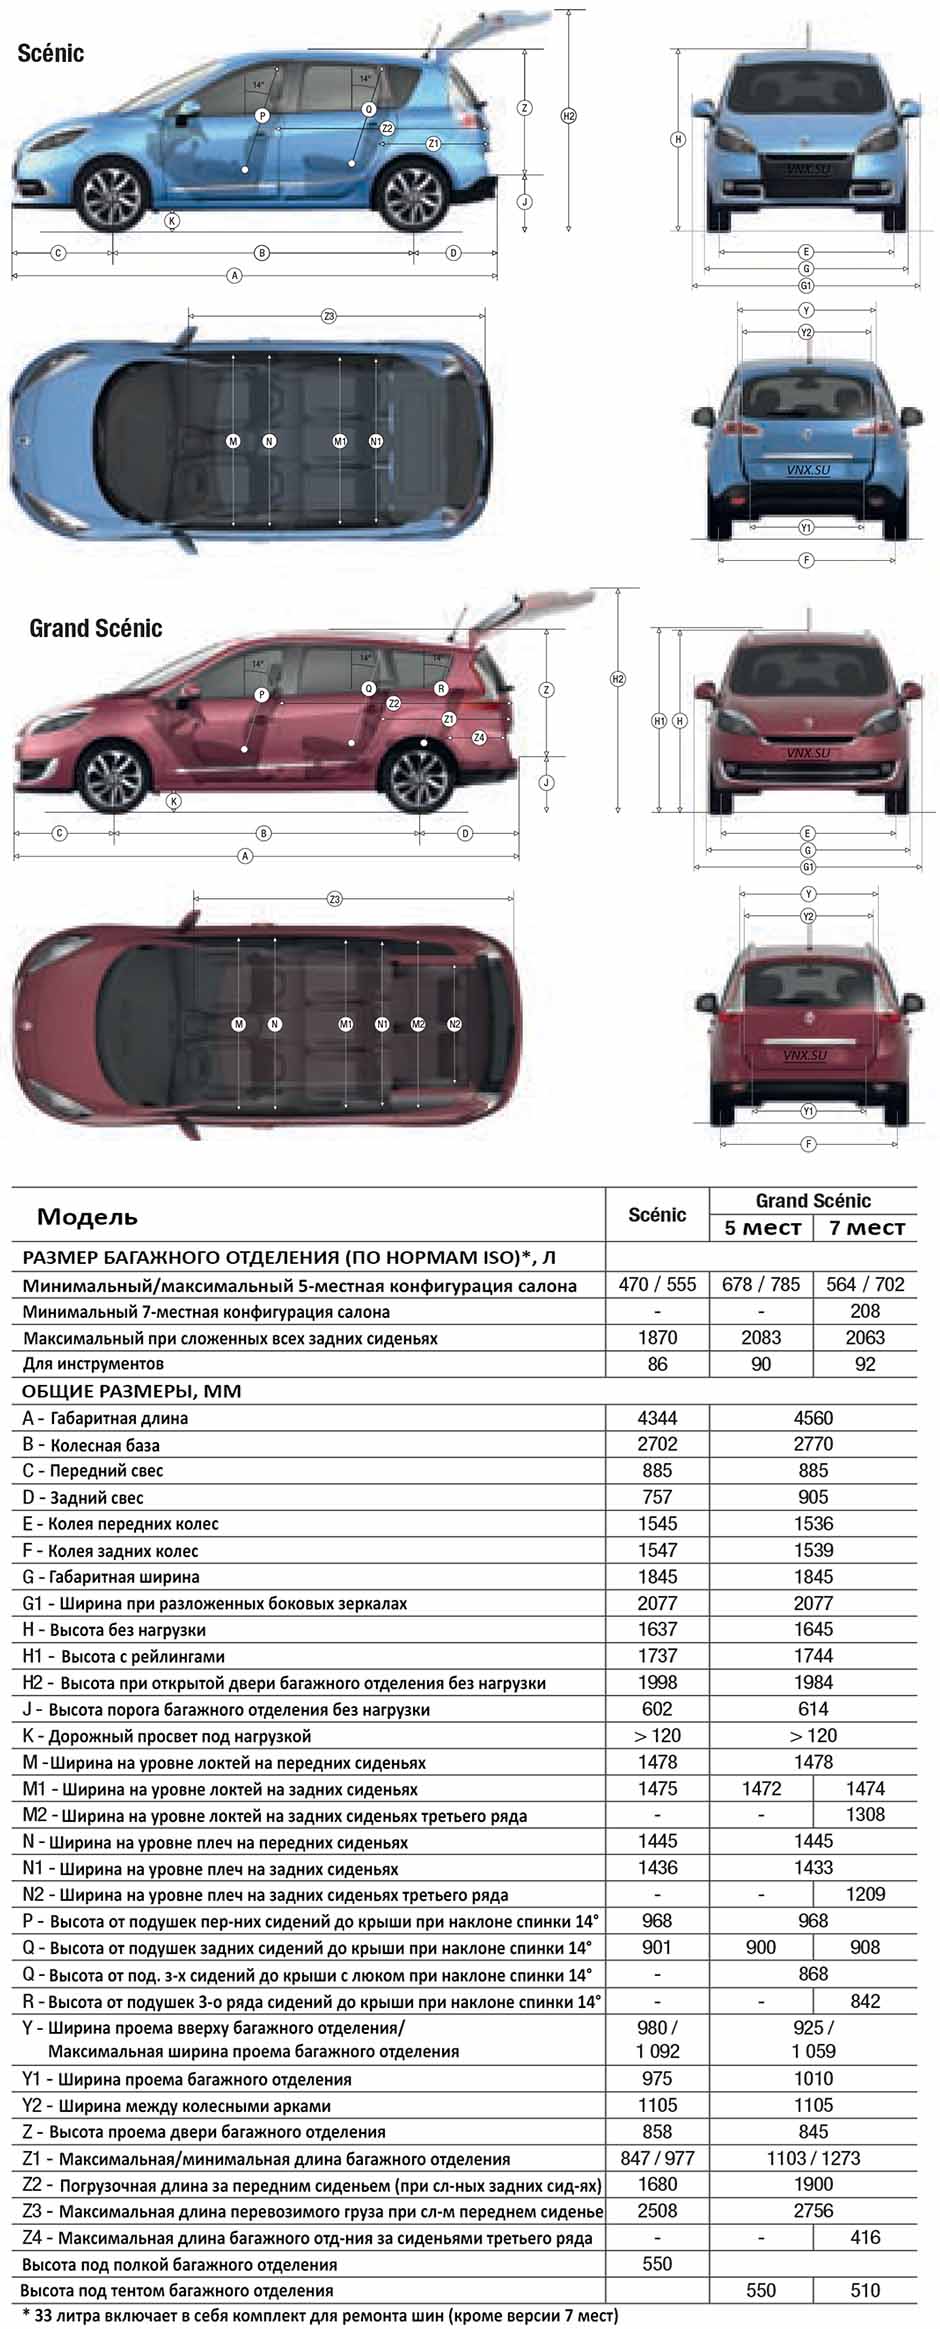 Габаритные размеры Рено Сценик 2009-2012 (dimensions Renault Scenic Mark III)